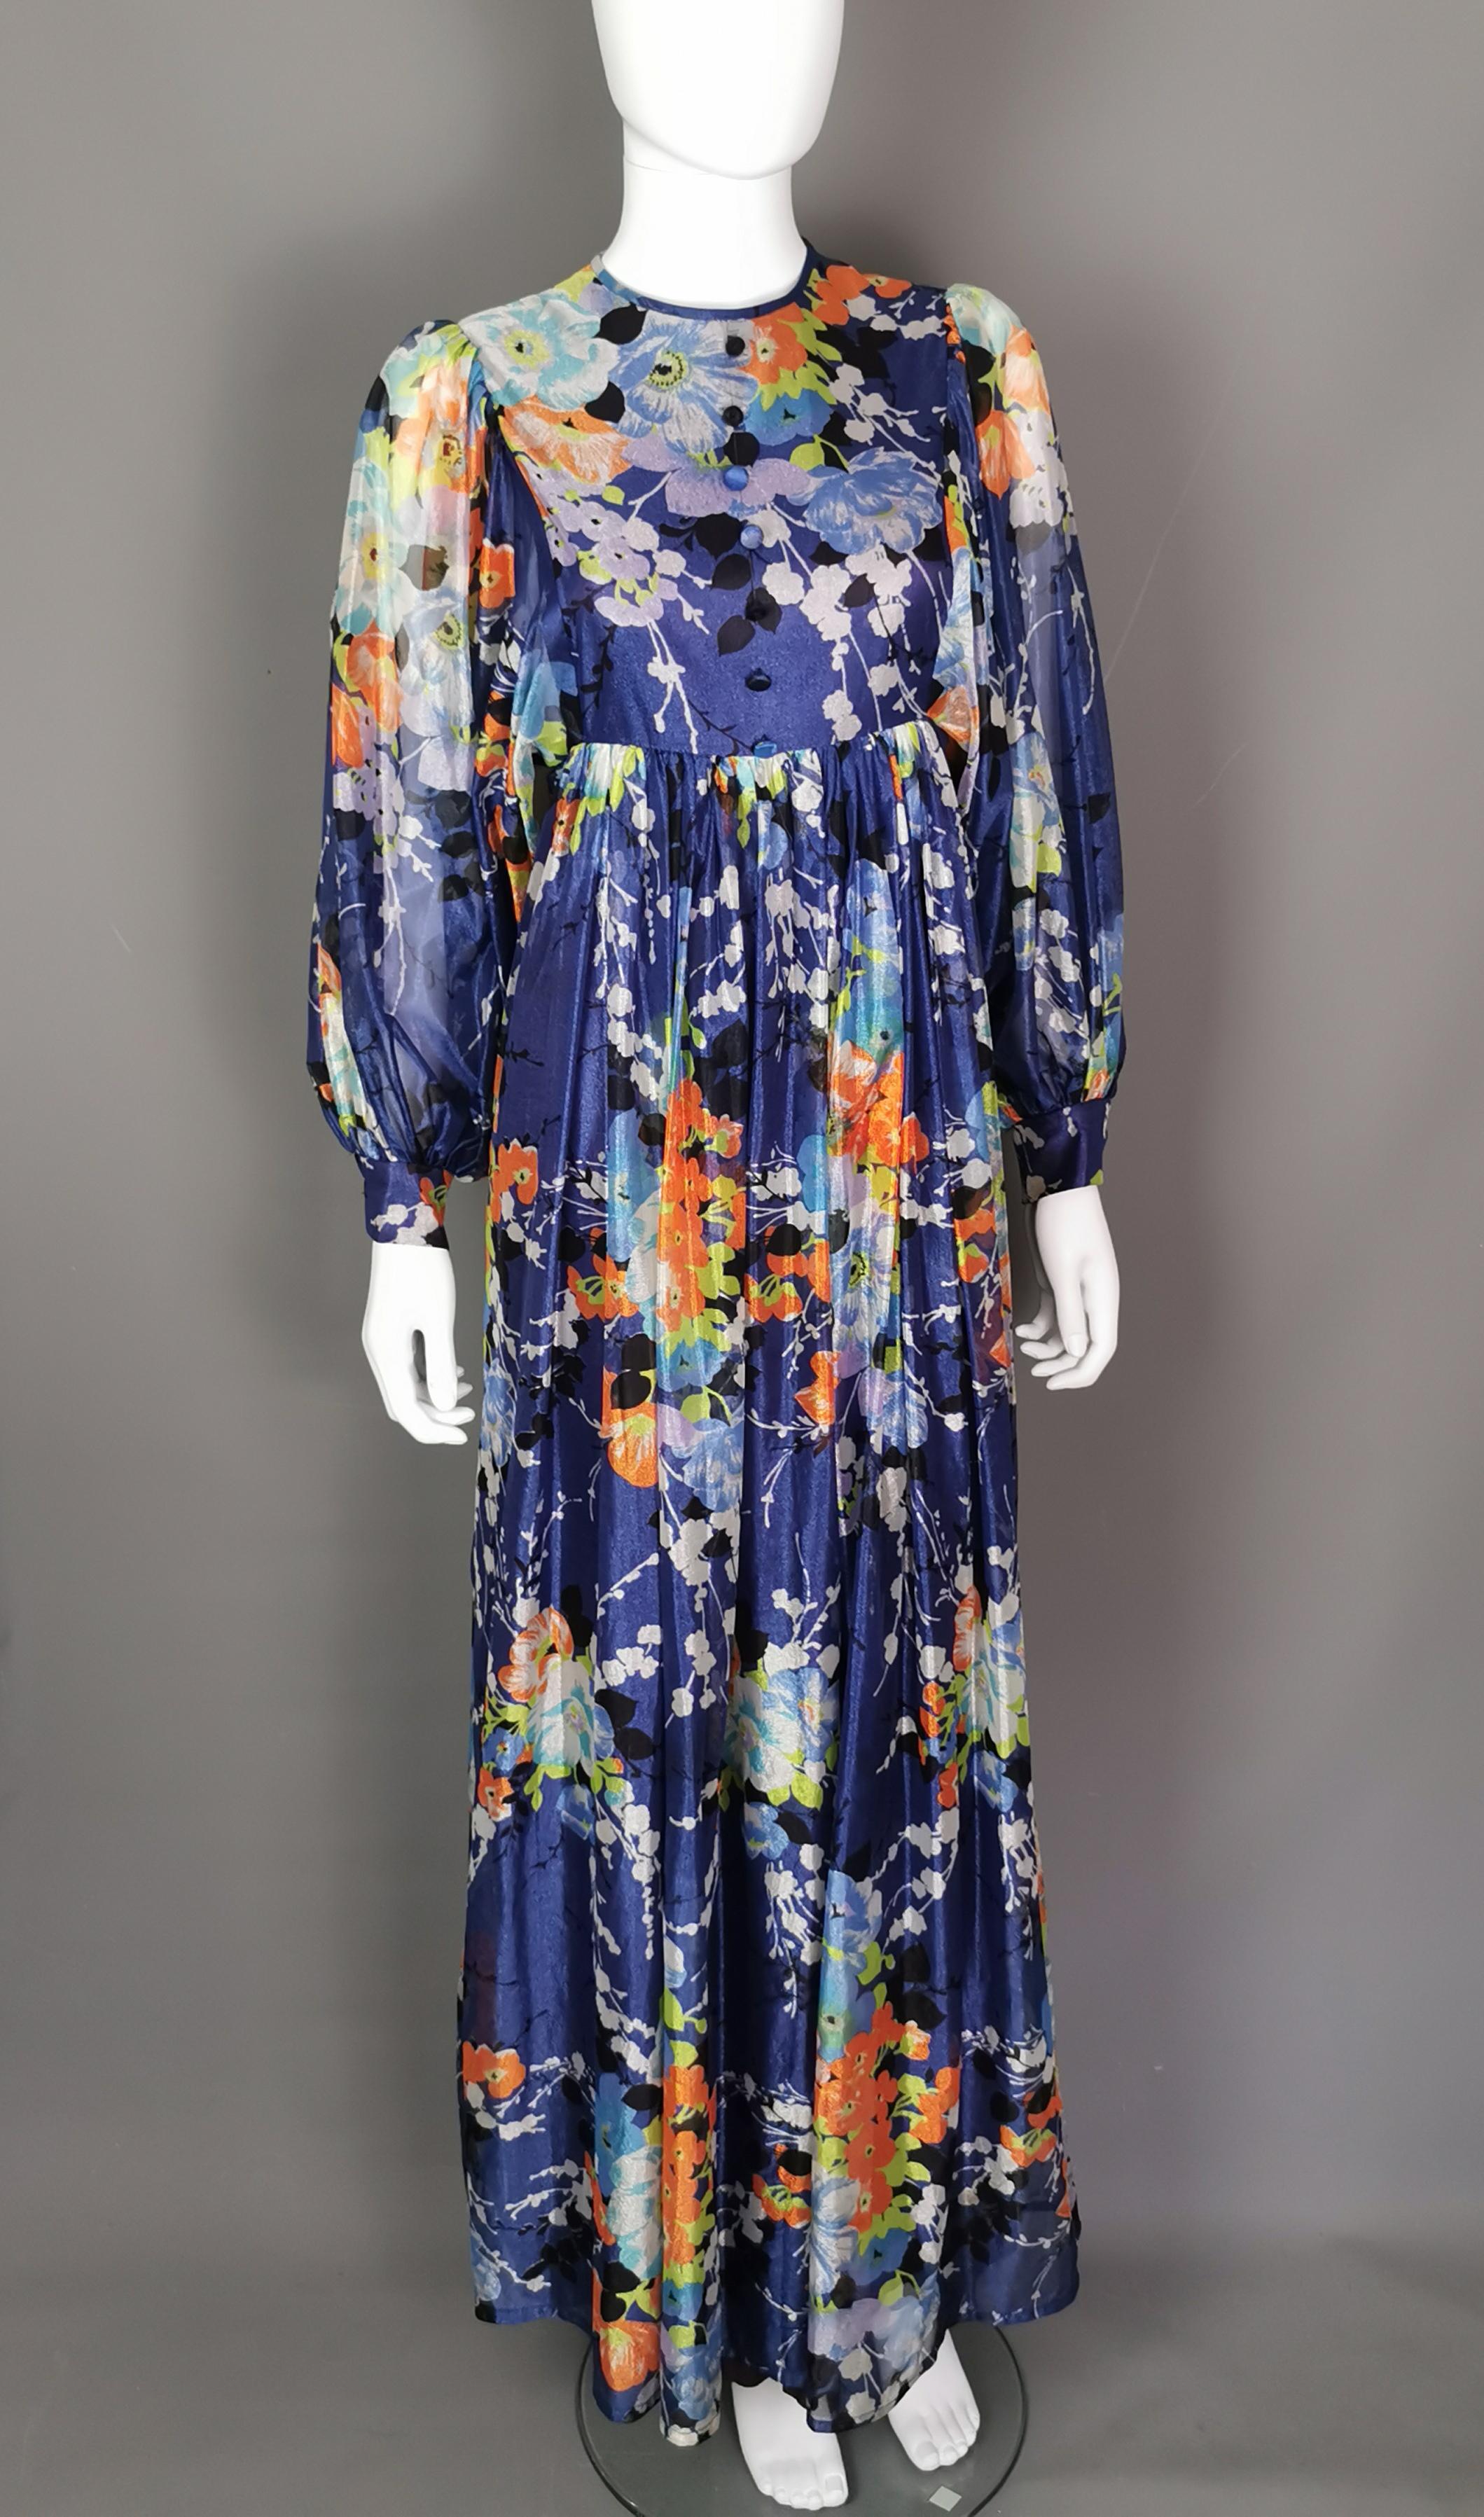 Ein wunderschönes Maxikleid mit Umhang aus den 1970er Jahren in einem leuchtenden Himmelblau.

Dieses Kleid erinnert mit seinem leichten Stoff, dem floralen Muster und dem langen, ausladenden Rock an sonnige 70er-Jahre-Festivaltage.

Es ist aus